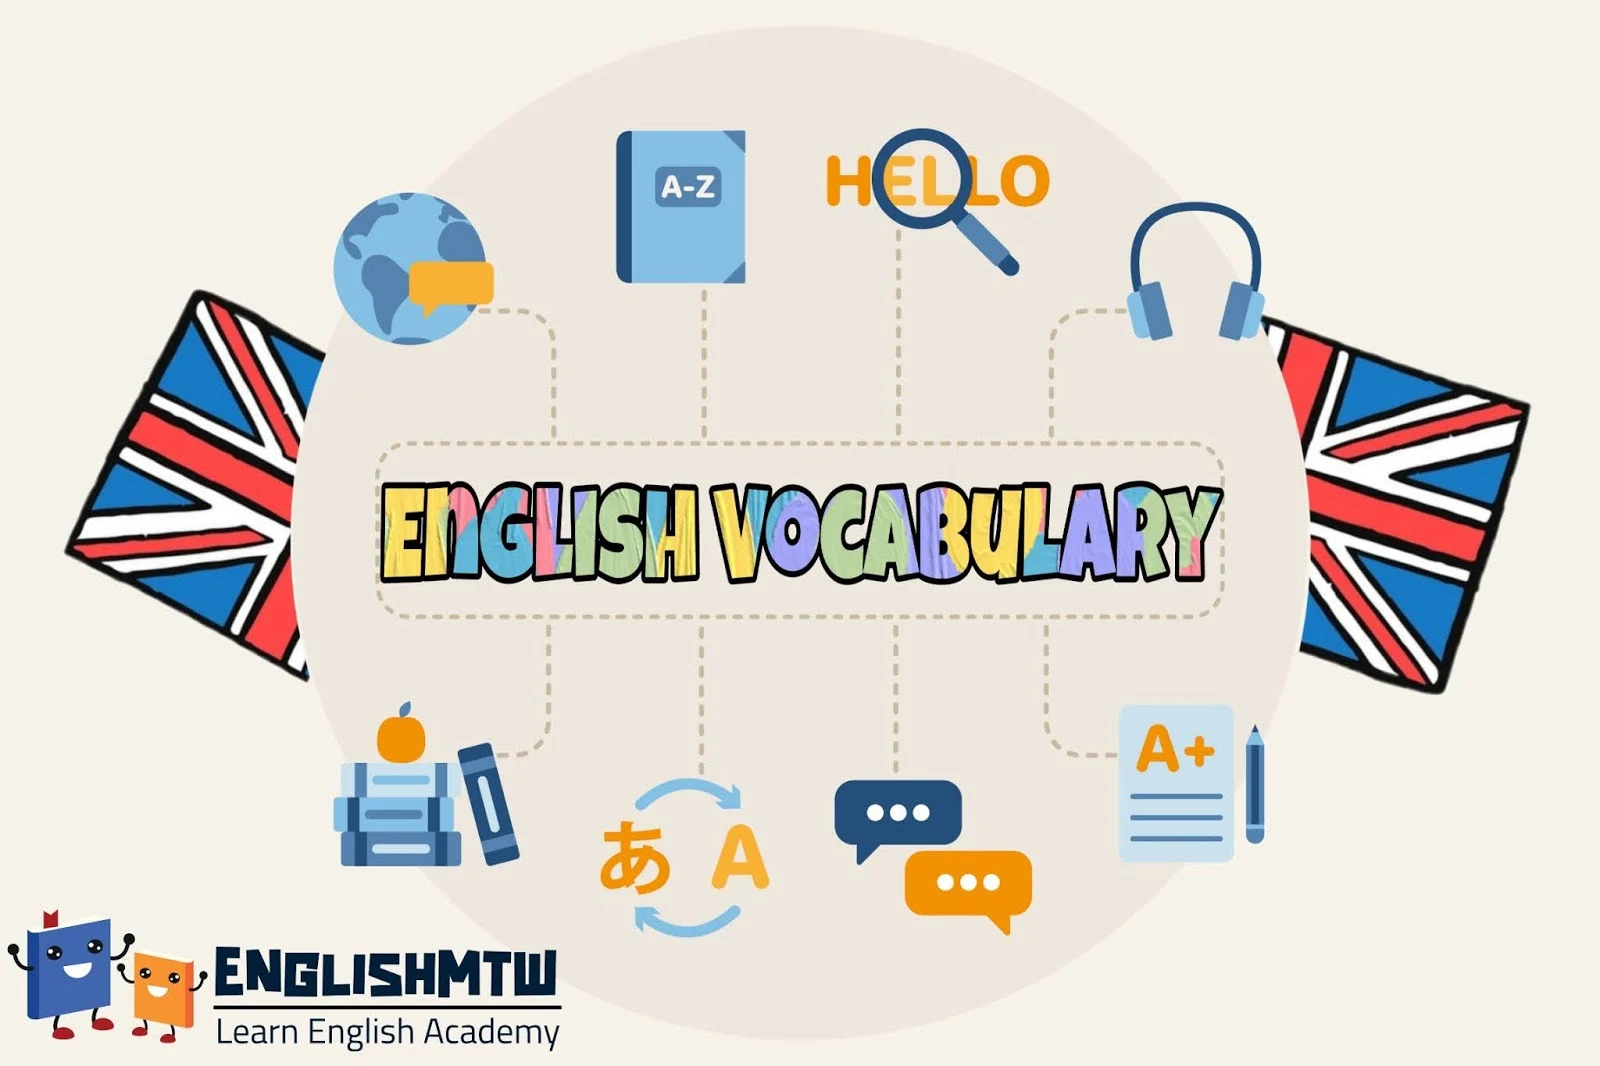 تحسين مفرداتك: 9 طرق ممتعة وفعالة لتعلم مفردات اللغة الإنجليزية بسرعة